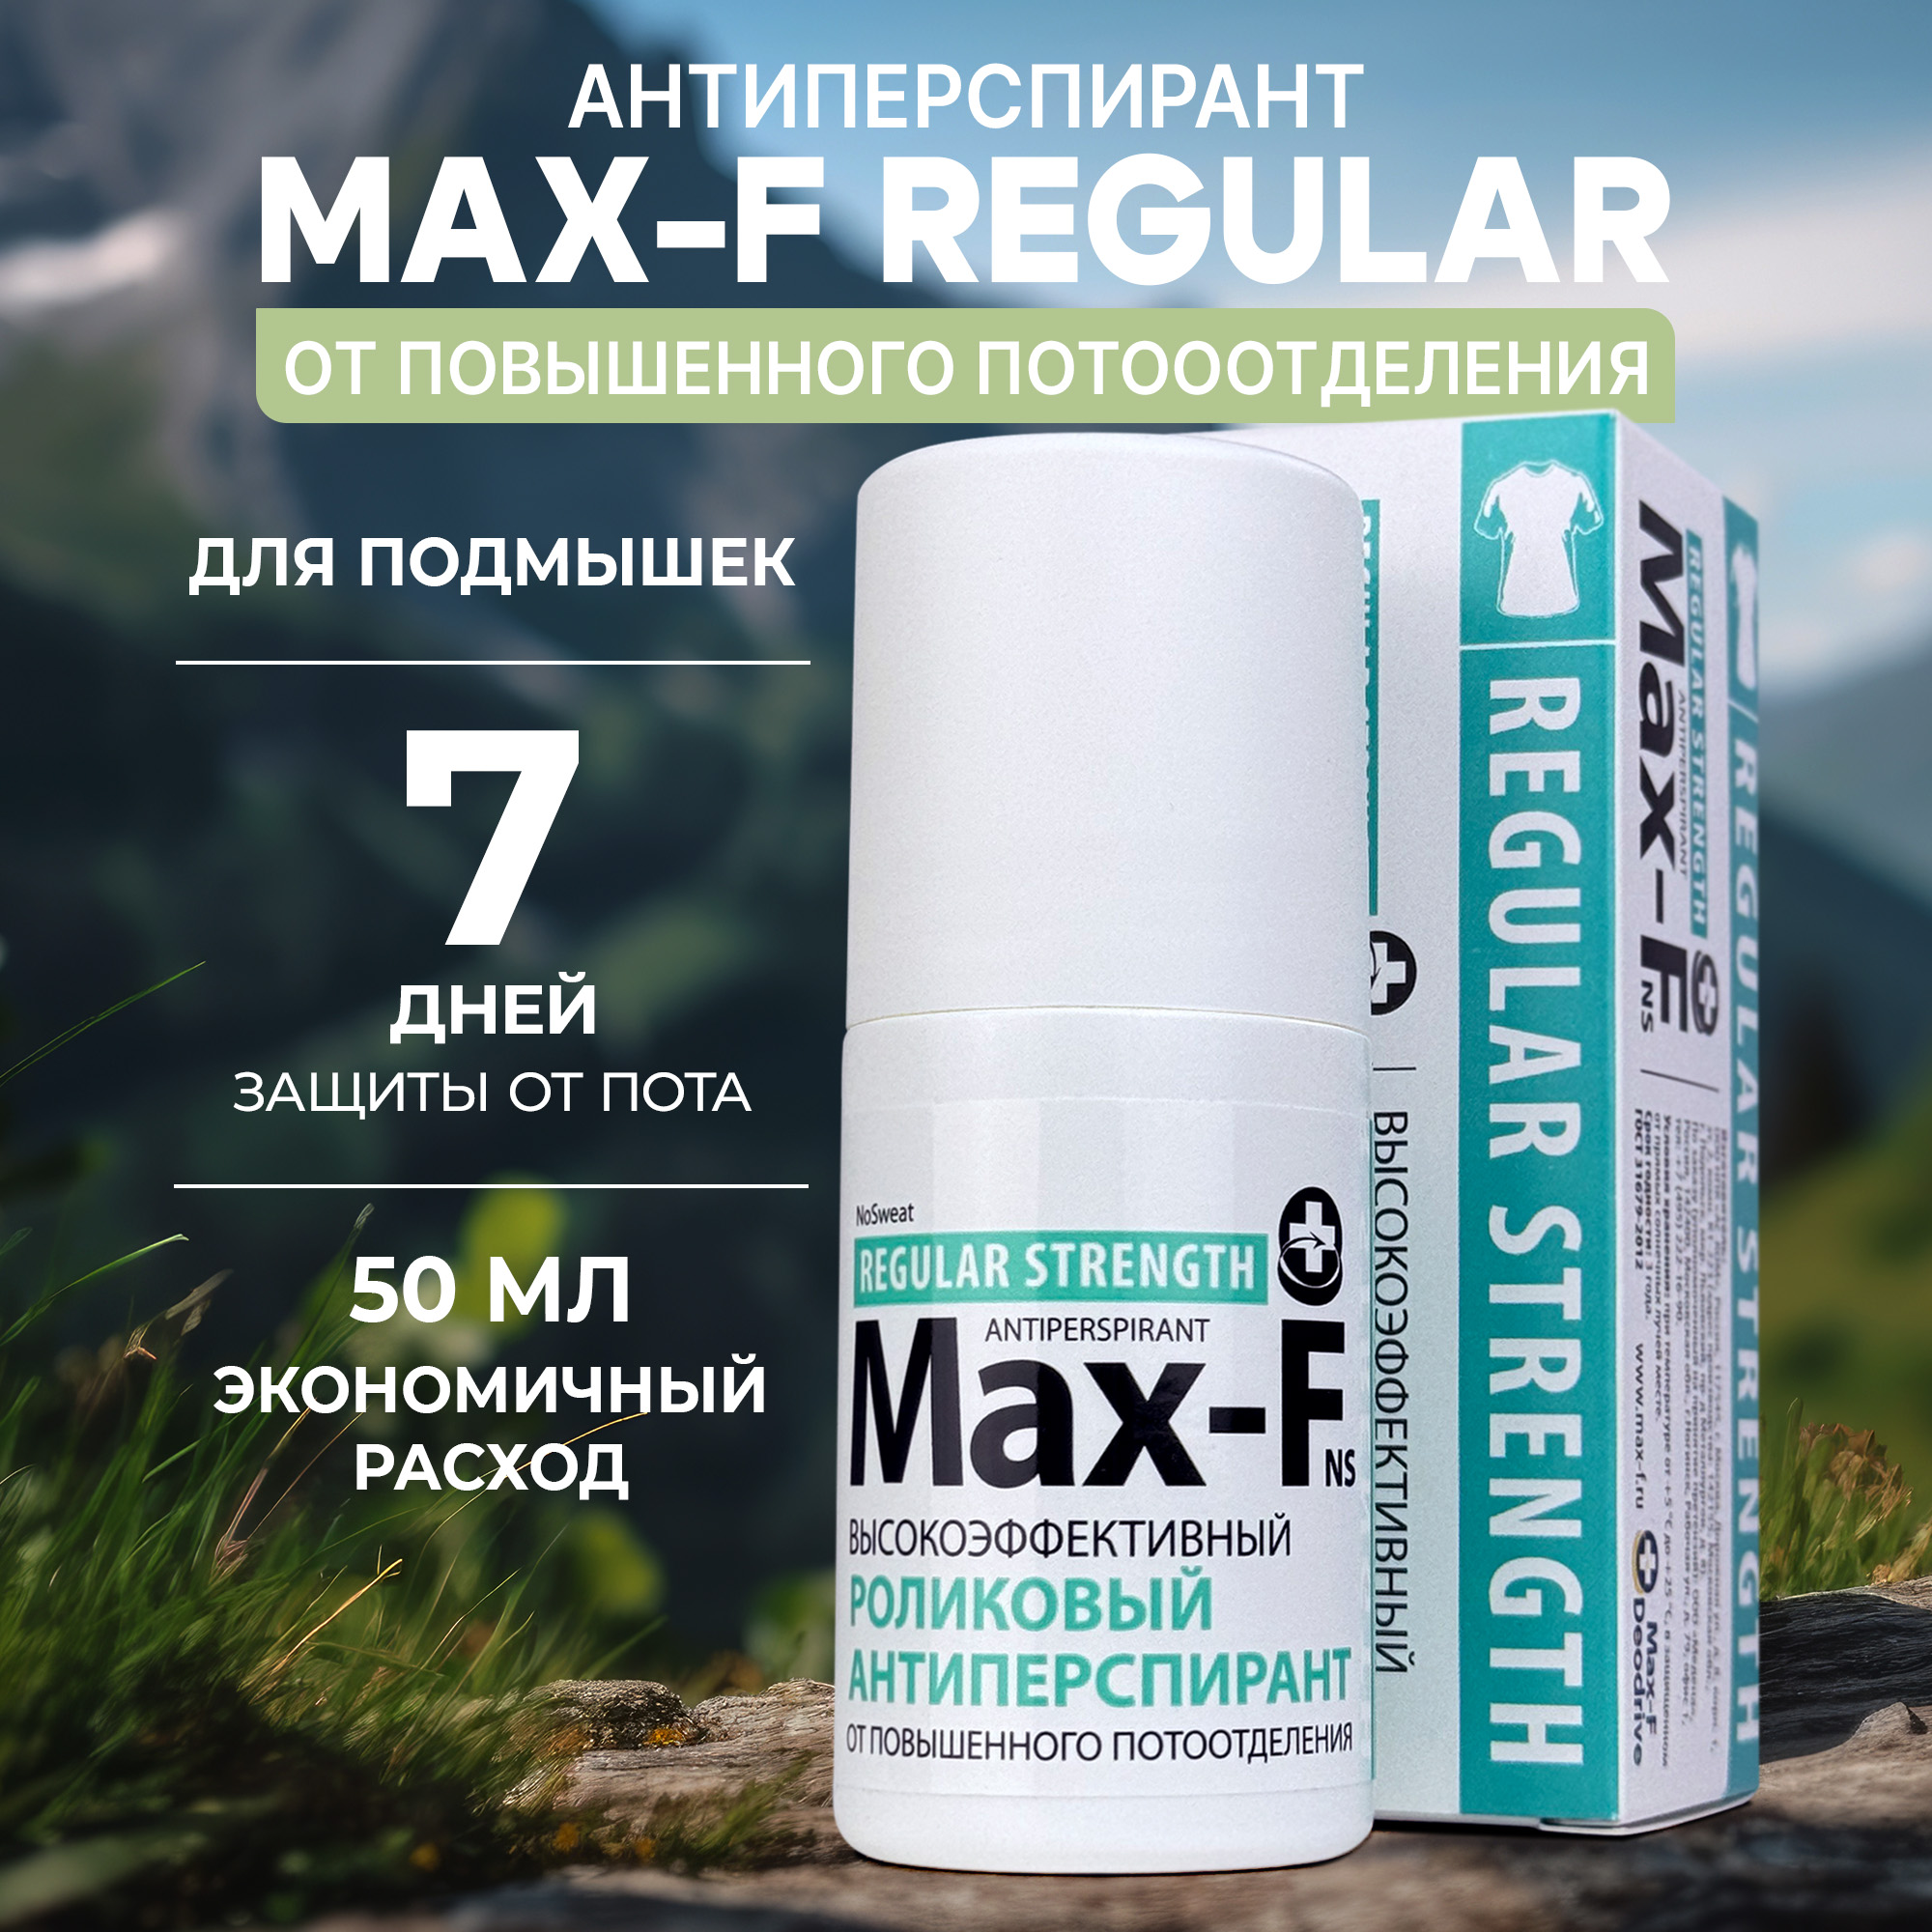 Антиперспирант Max-F NoSweat 15% от пота и запаха для подмышек прокладки для подмышек от пота стоп агент белые с ионами серебра 20 шт